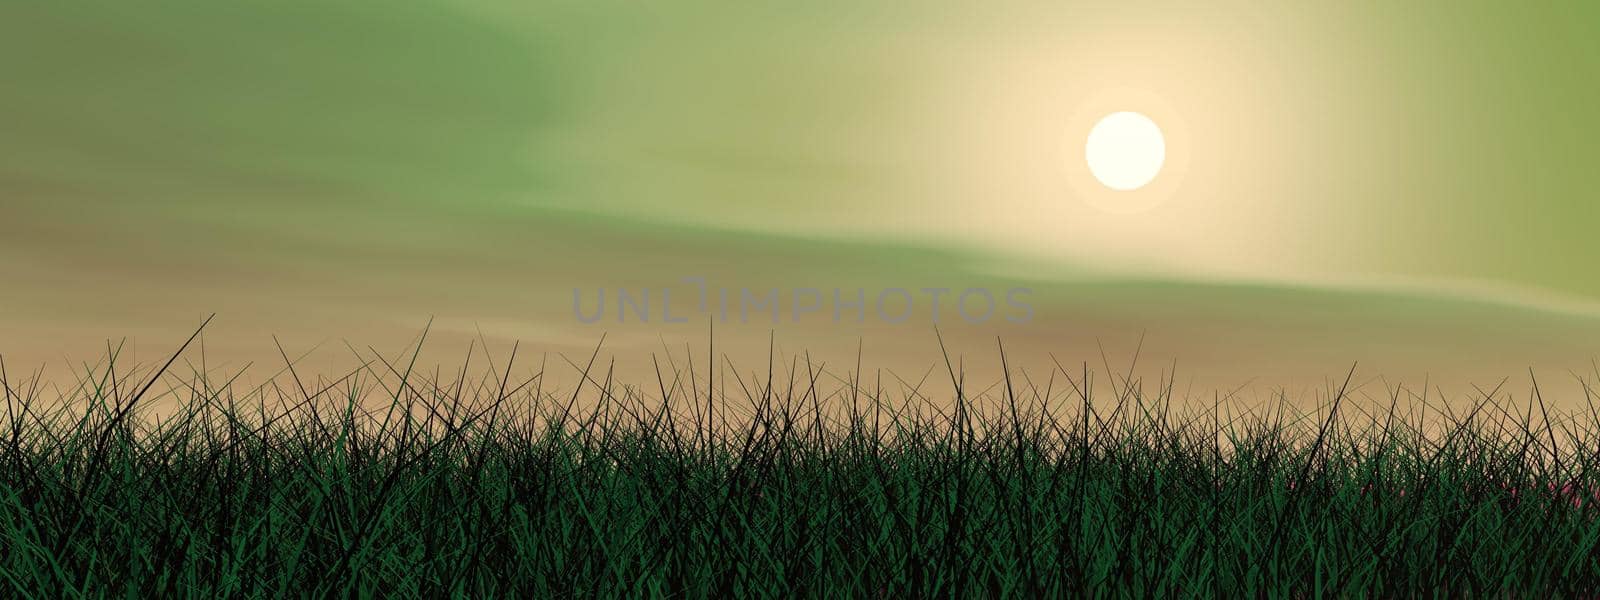 Green sunset - 3D render by Elenaphotos21